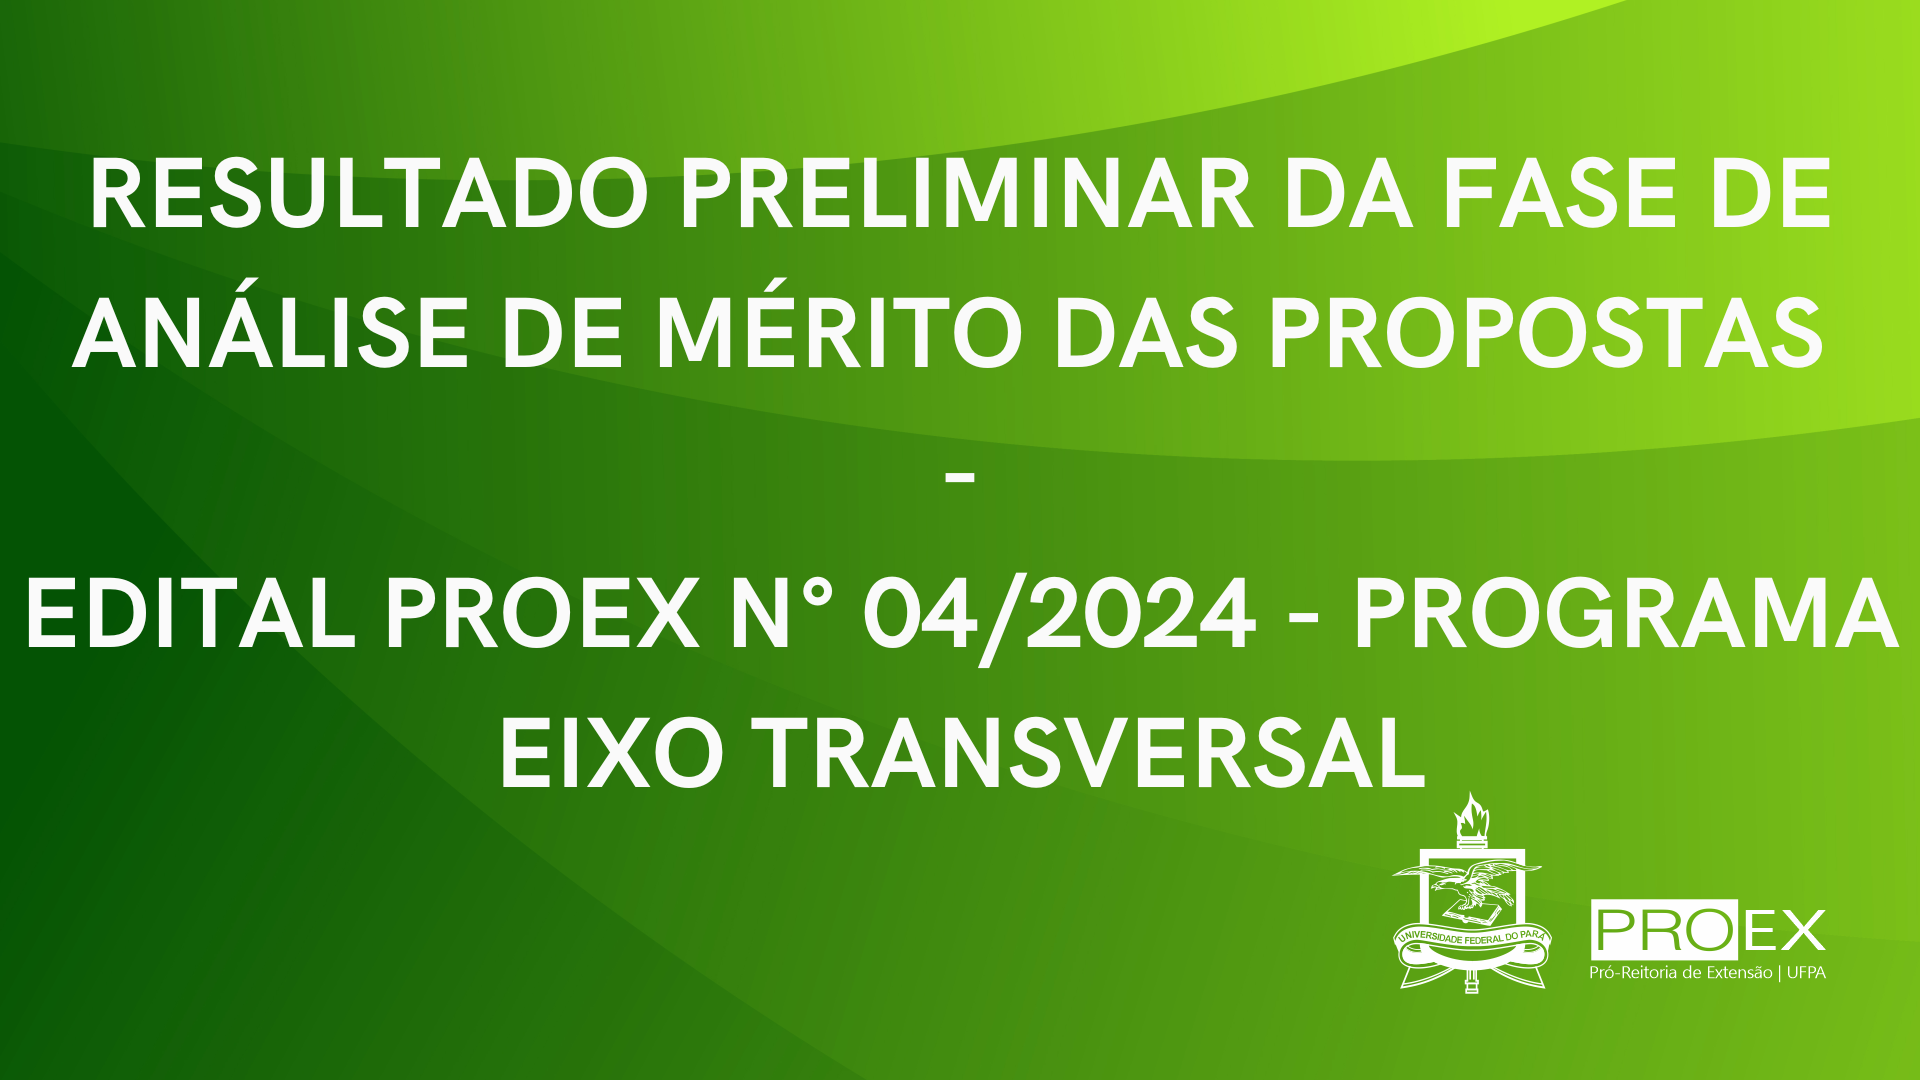 RESULTADO PRELIMINAR DA FASE DE ANÁLISE DE MÉRITO - EIXO TRANSVERSAL 2024